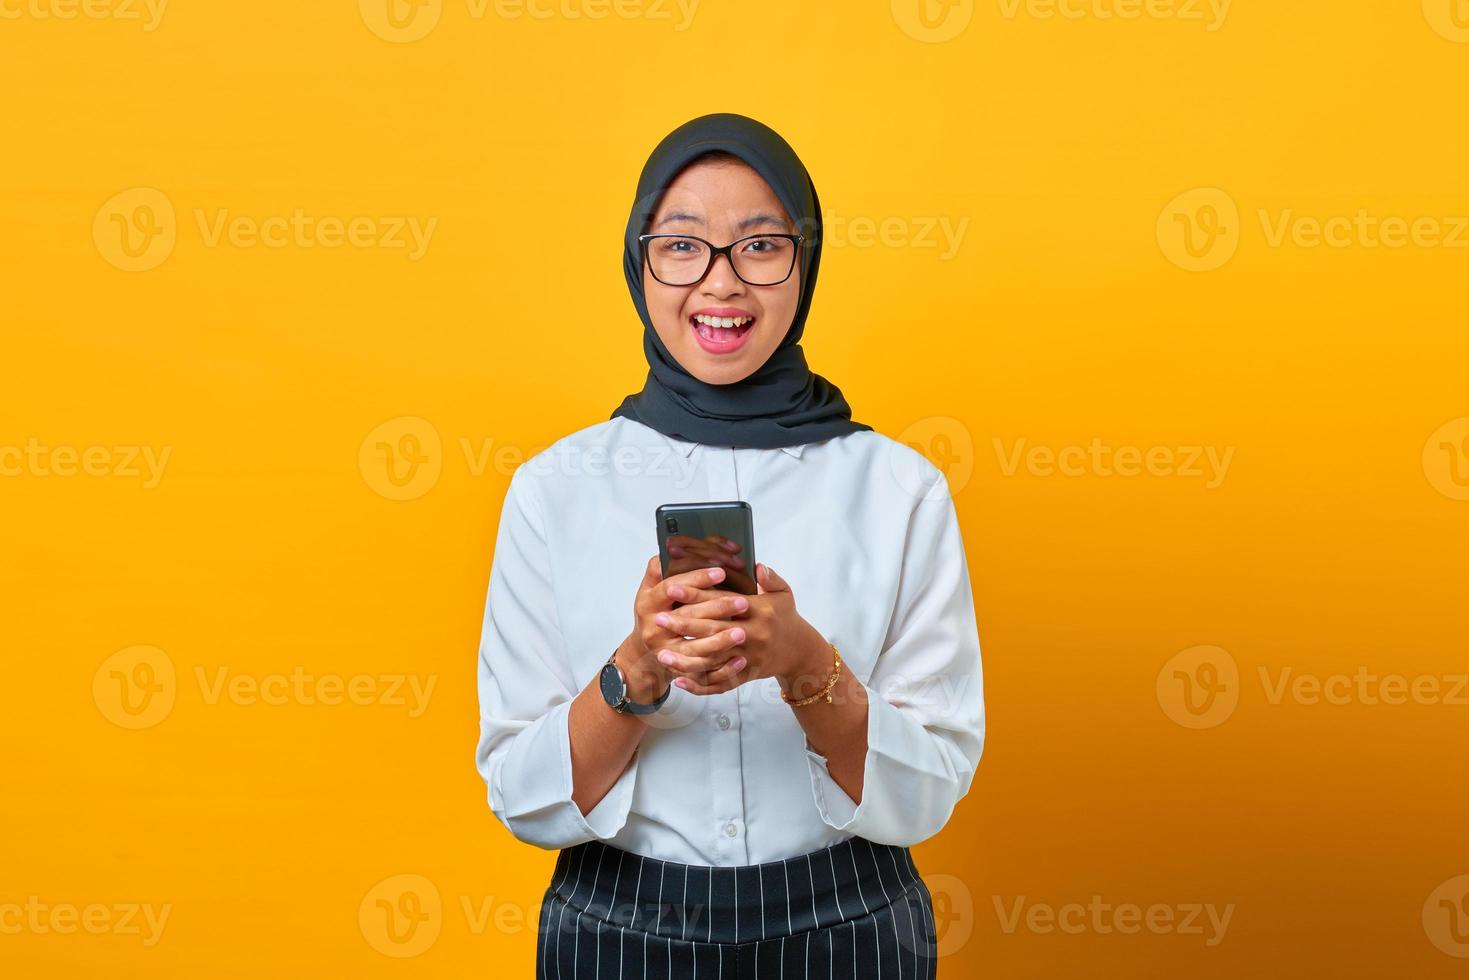 allegra giovane donna asiatica che tiene il telefono cellulare e guarda la macchina fotografica su sfondo giallo foto